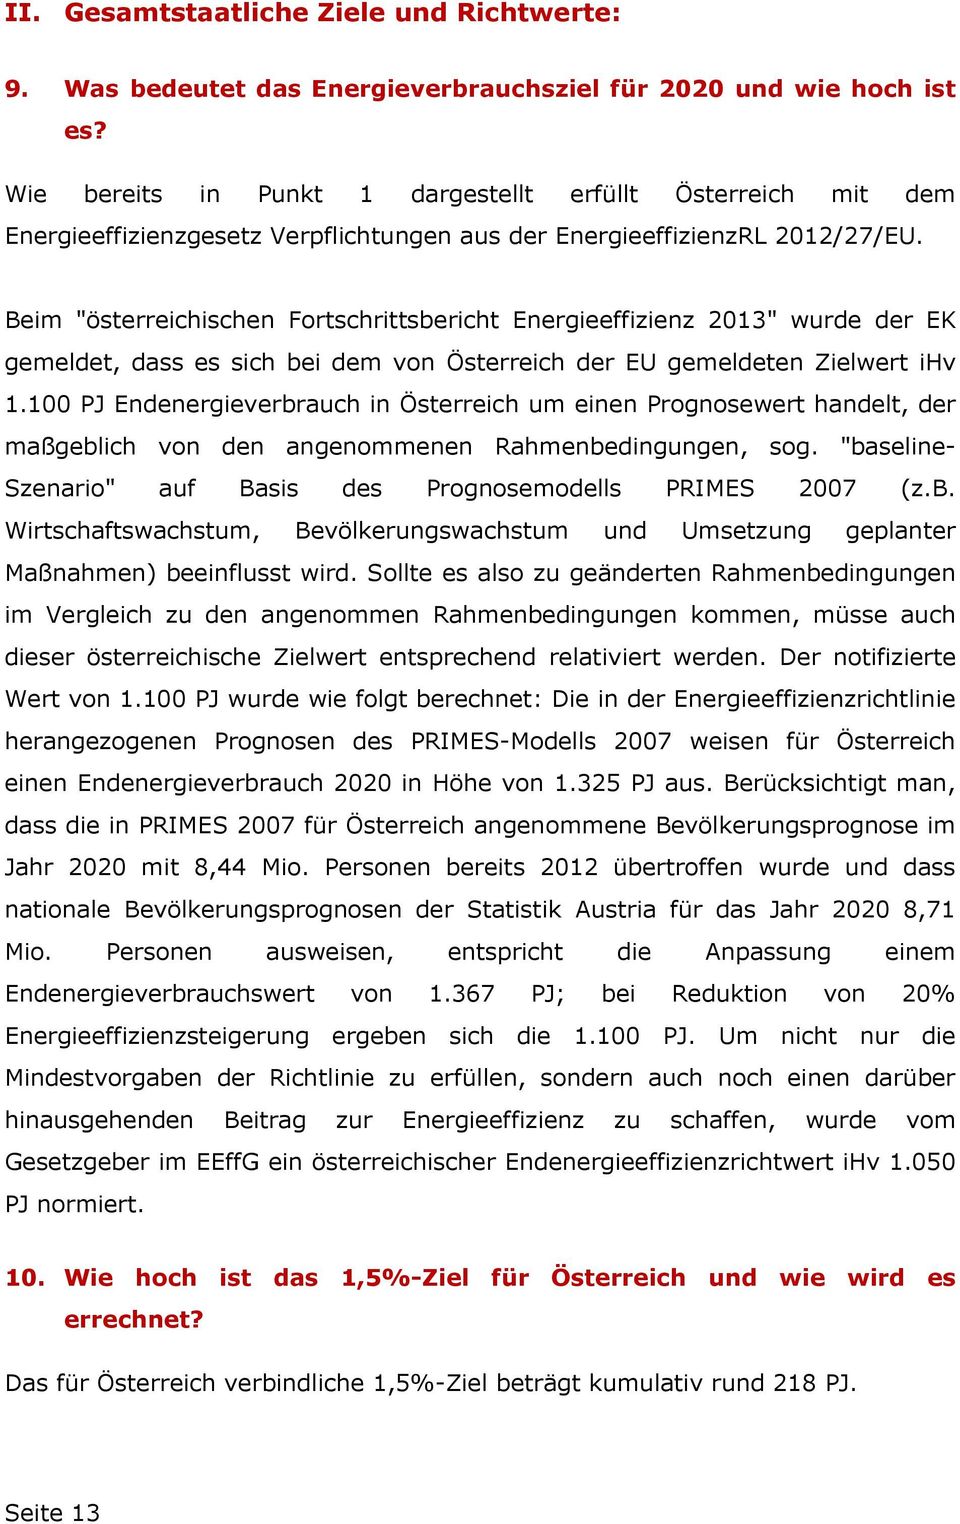 Beim "österreichischen Fortschrittsbericht Energieeffizienz 2013" wurde der EK gemeldet, dass es sich bei dem von Österreich der EU gemeldeten Zielwert ihv 1.